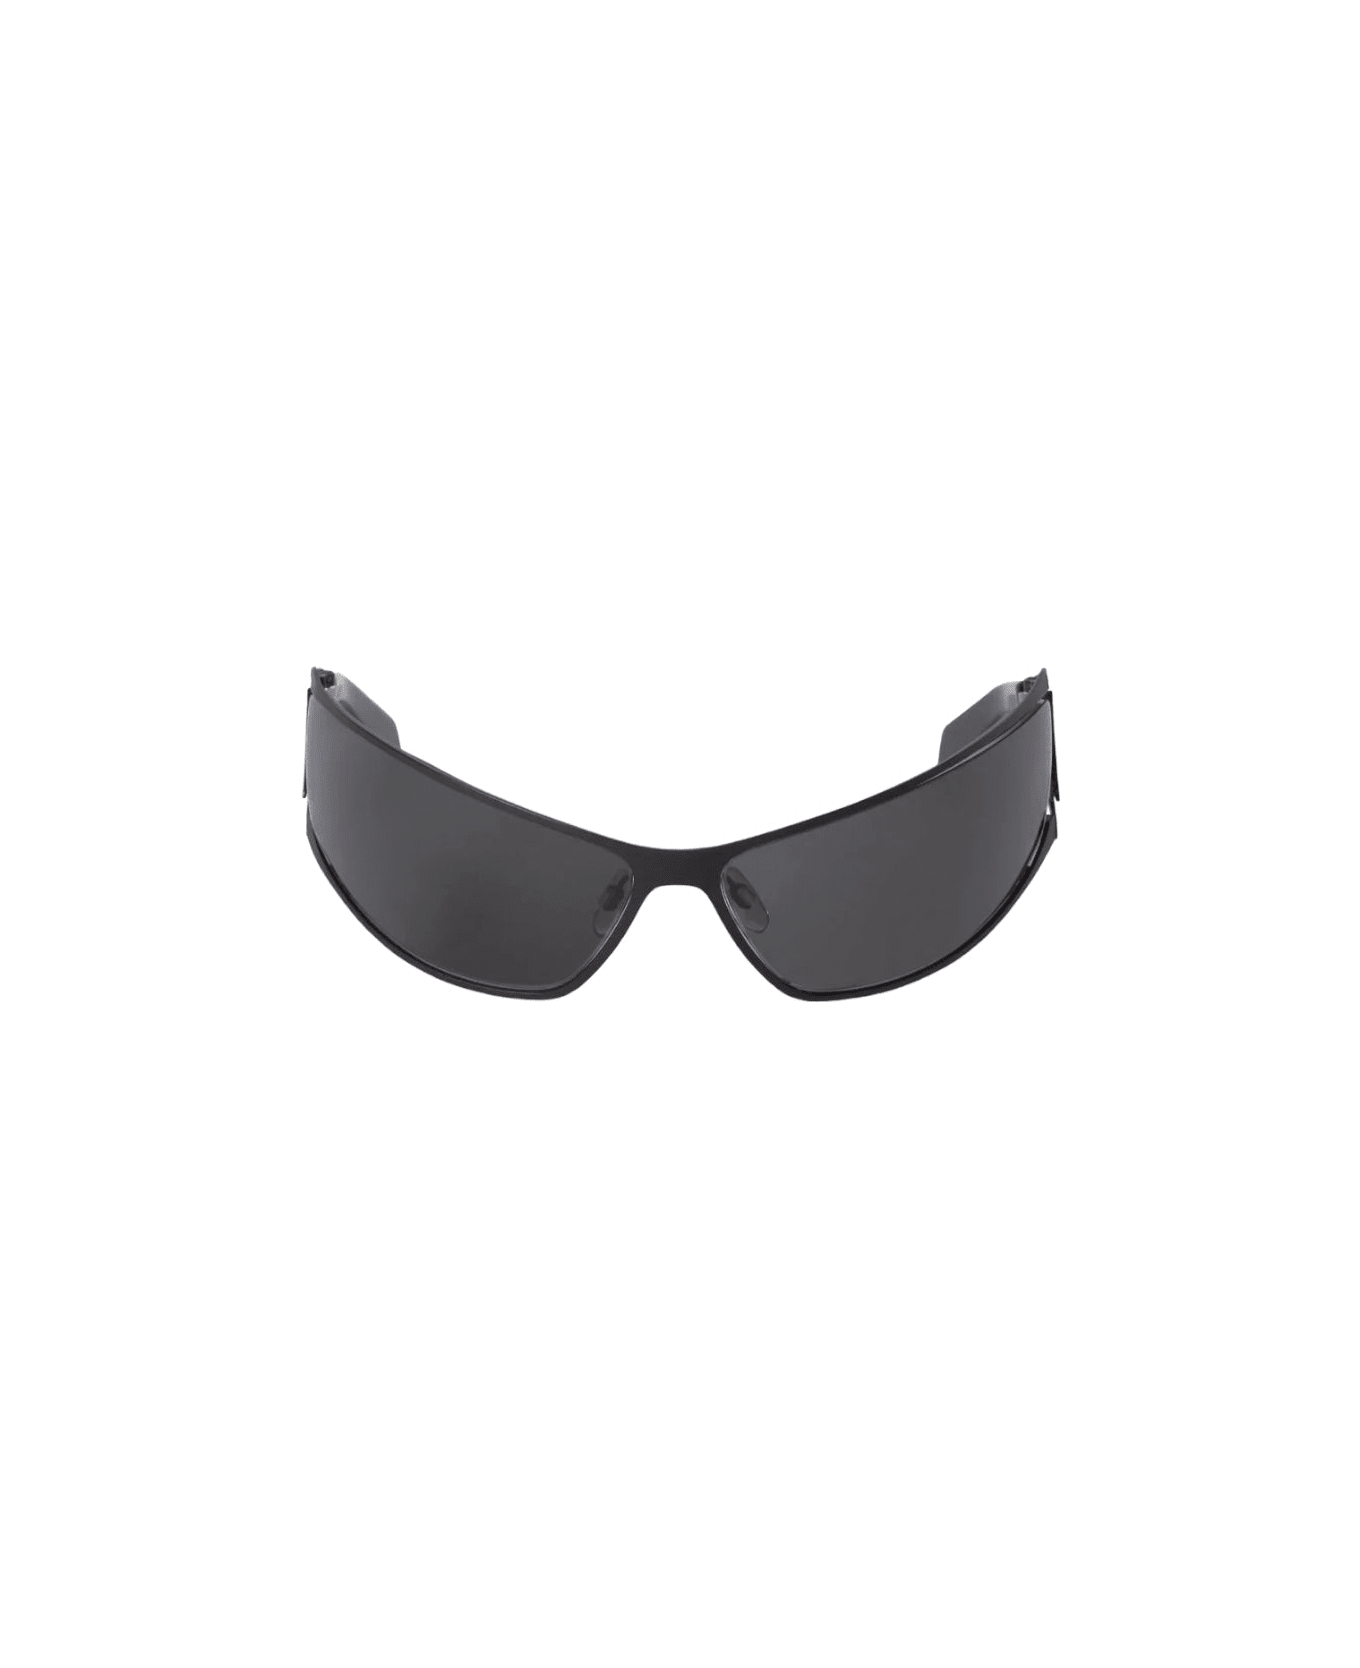 Off-White Luna - Black Sunglasses